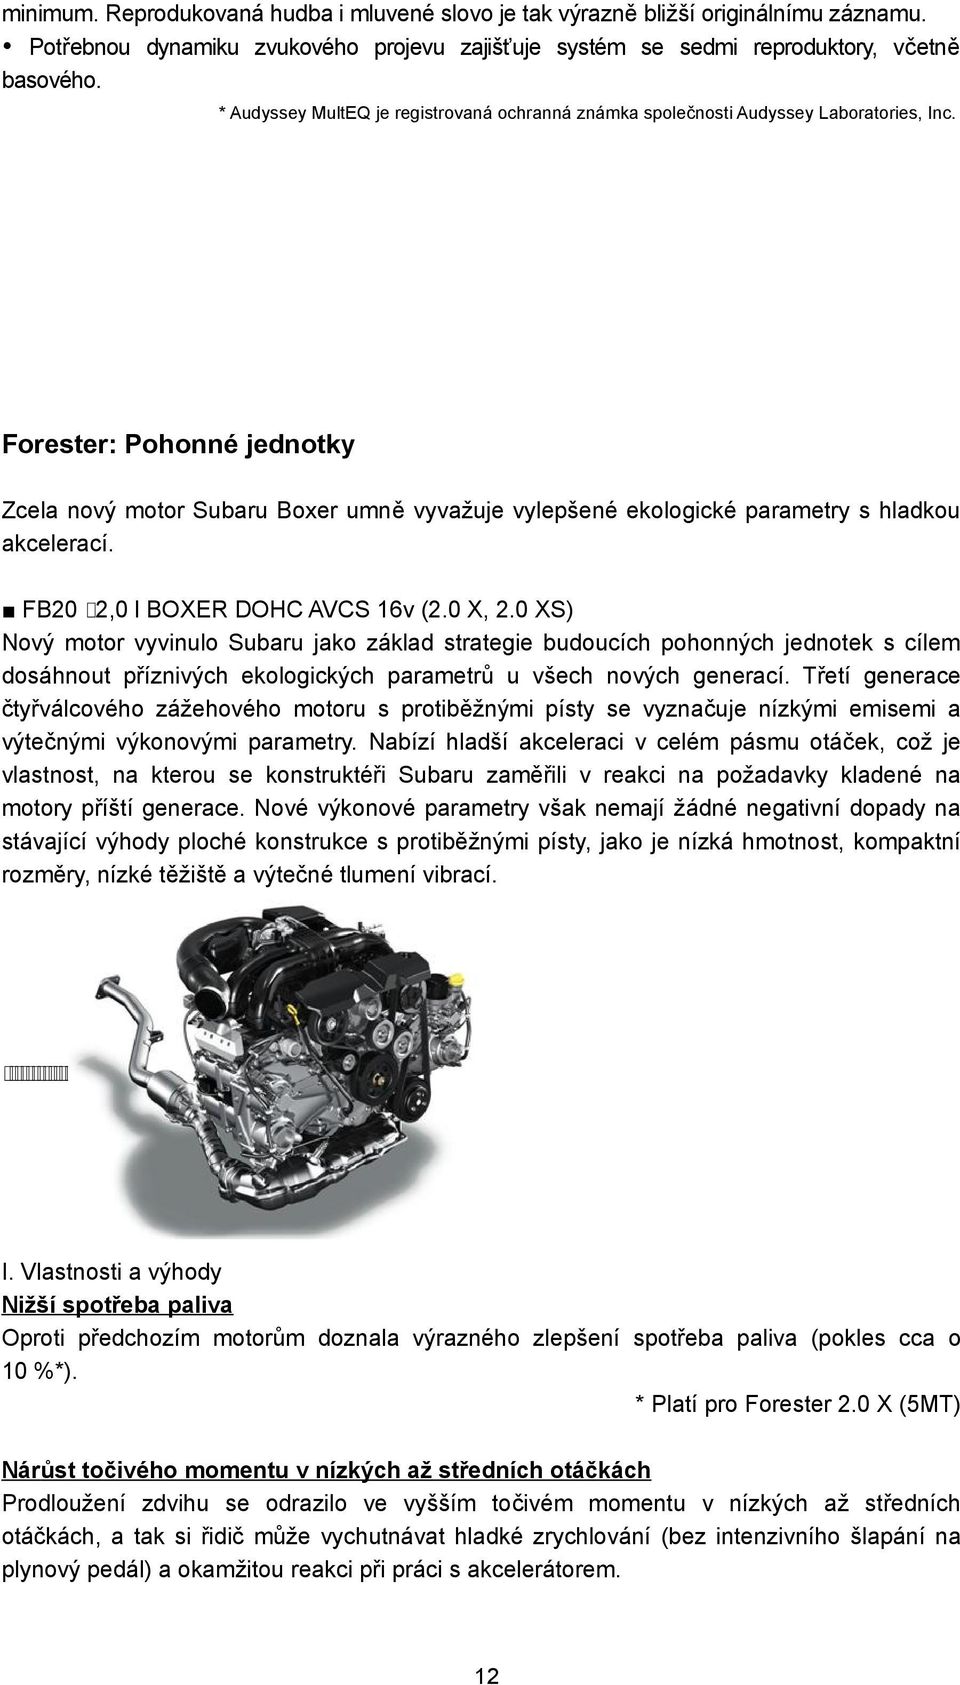 Forester: Pohonné jednotky Zcela nový motor Subaru Boxer umně vyvažuje vylepšené ekologické parametry s hladkou akcelerací. FB20 2,0 l BOXER DOHC AVCS 16v (2.0 X, 2.